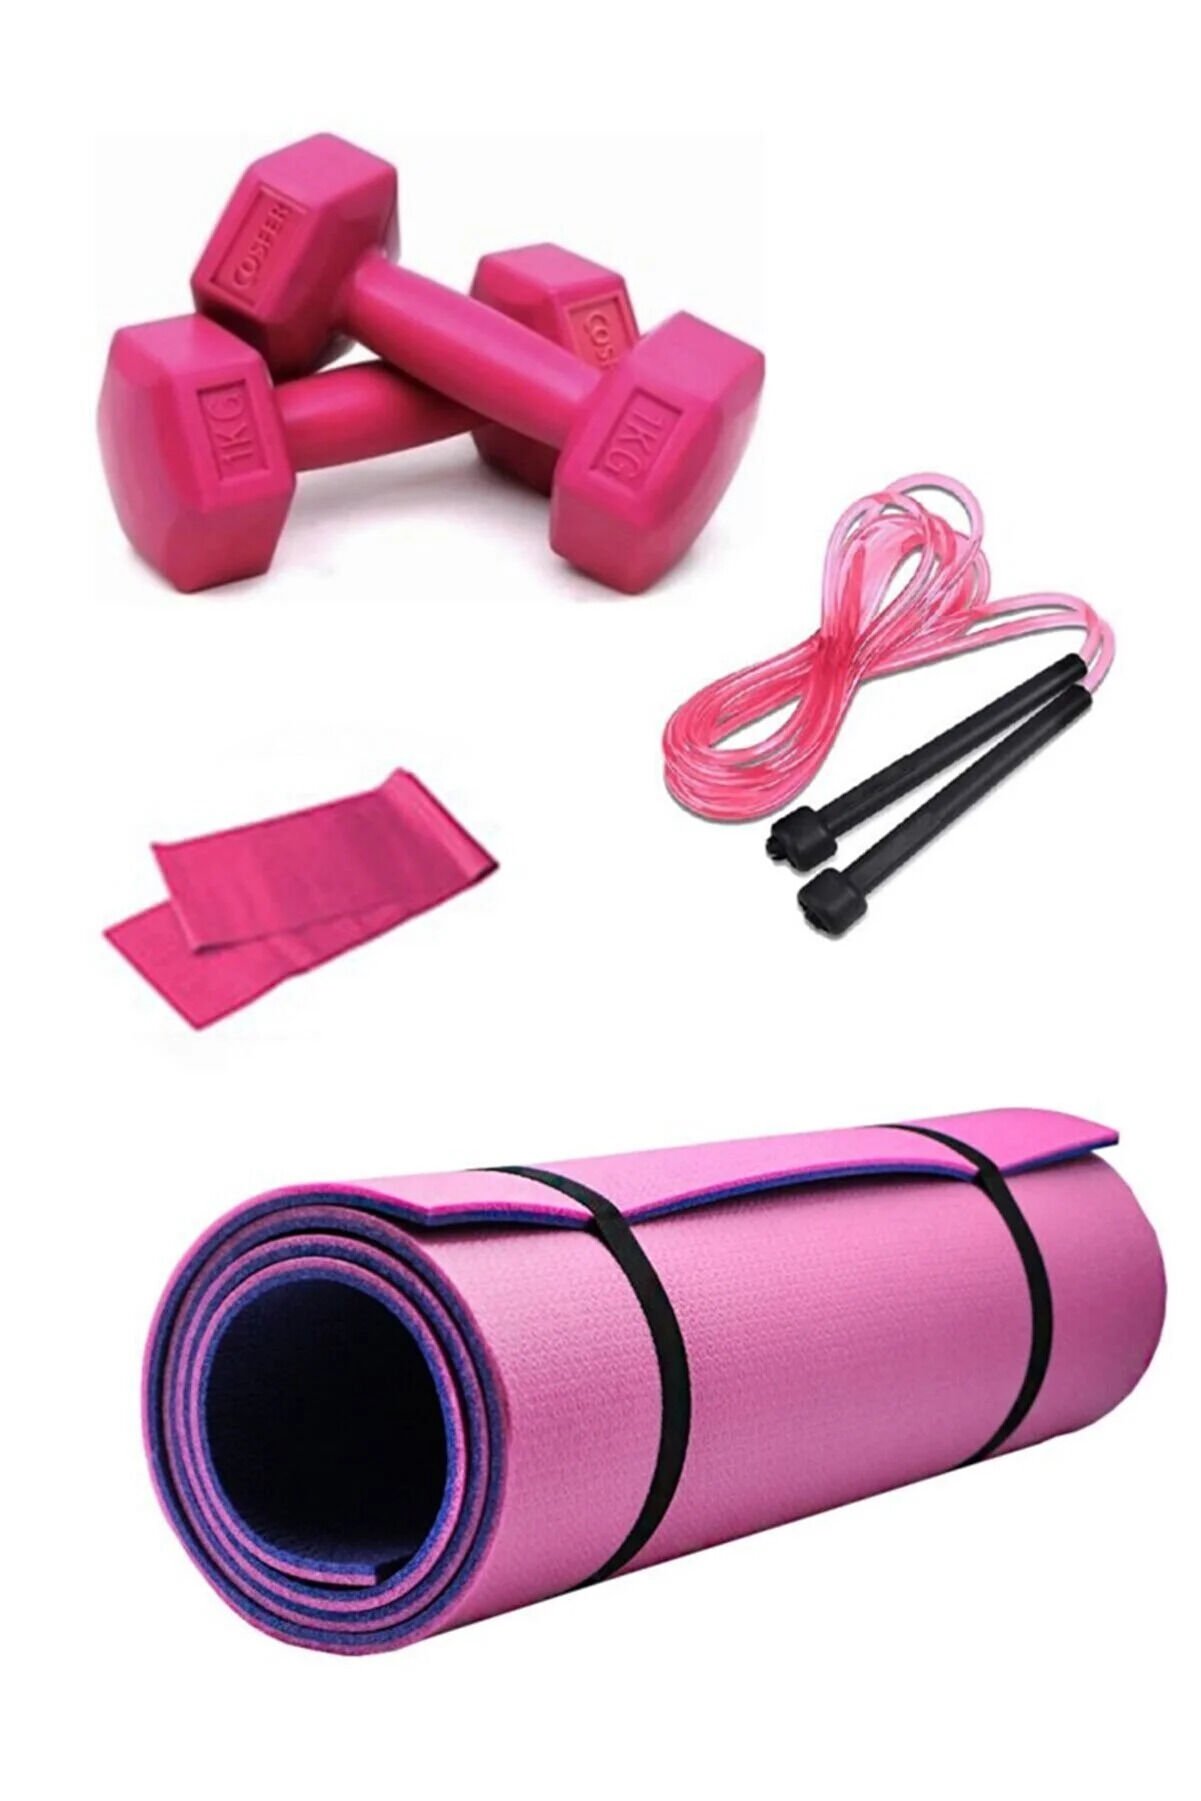 Mor-pembe Pilates & Yoga Matı 8mm + Direnç Bandı + Atlama Ipi + 1kg Dambıl